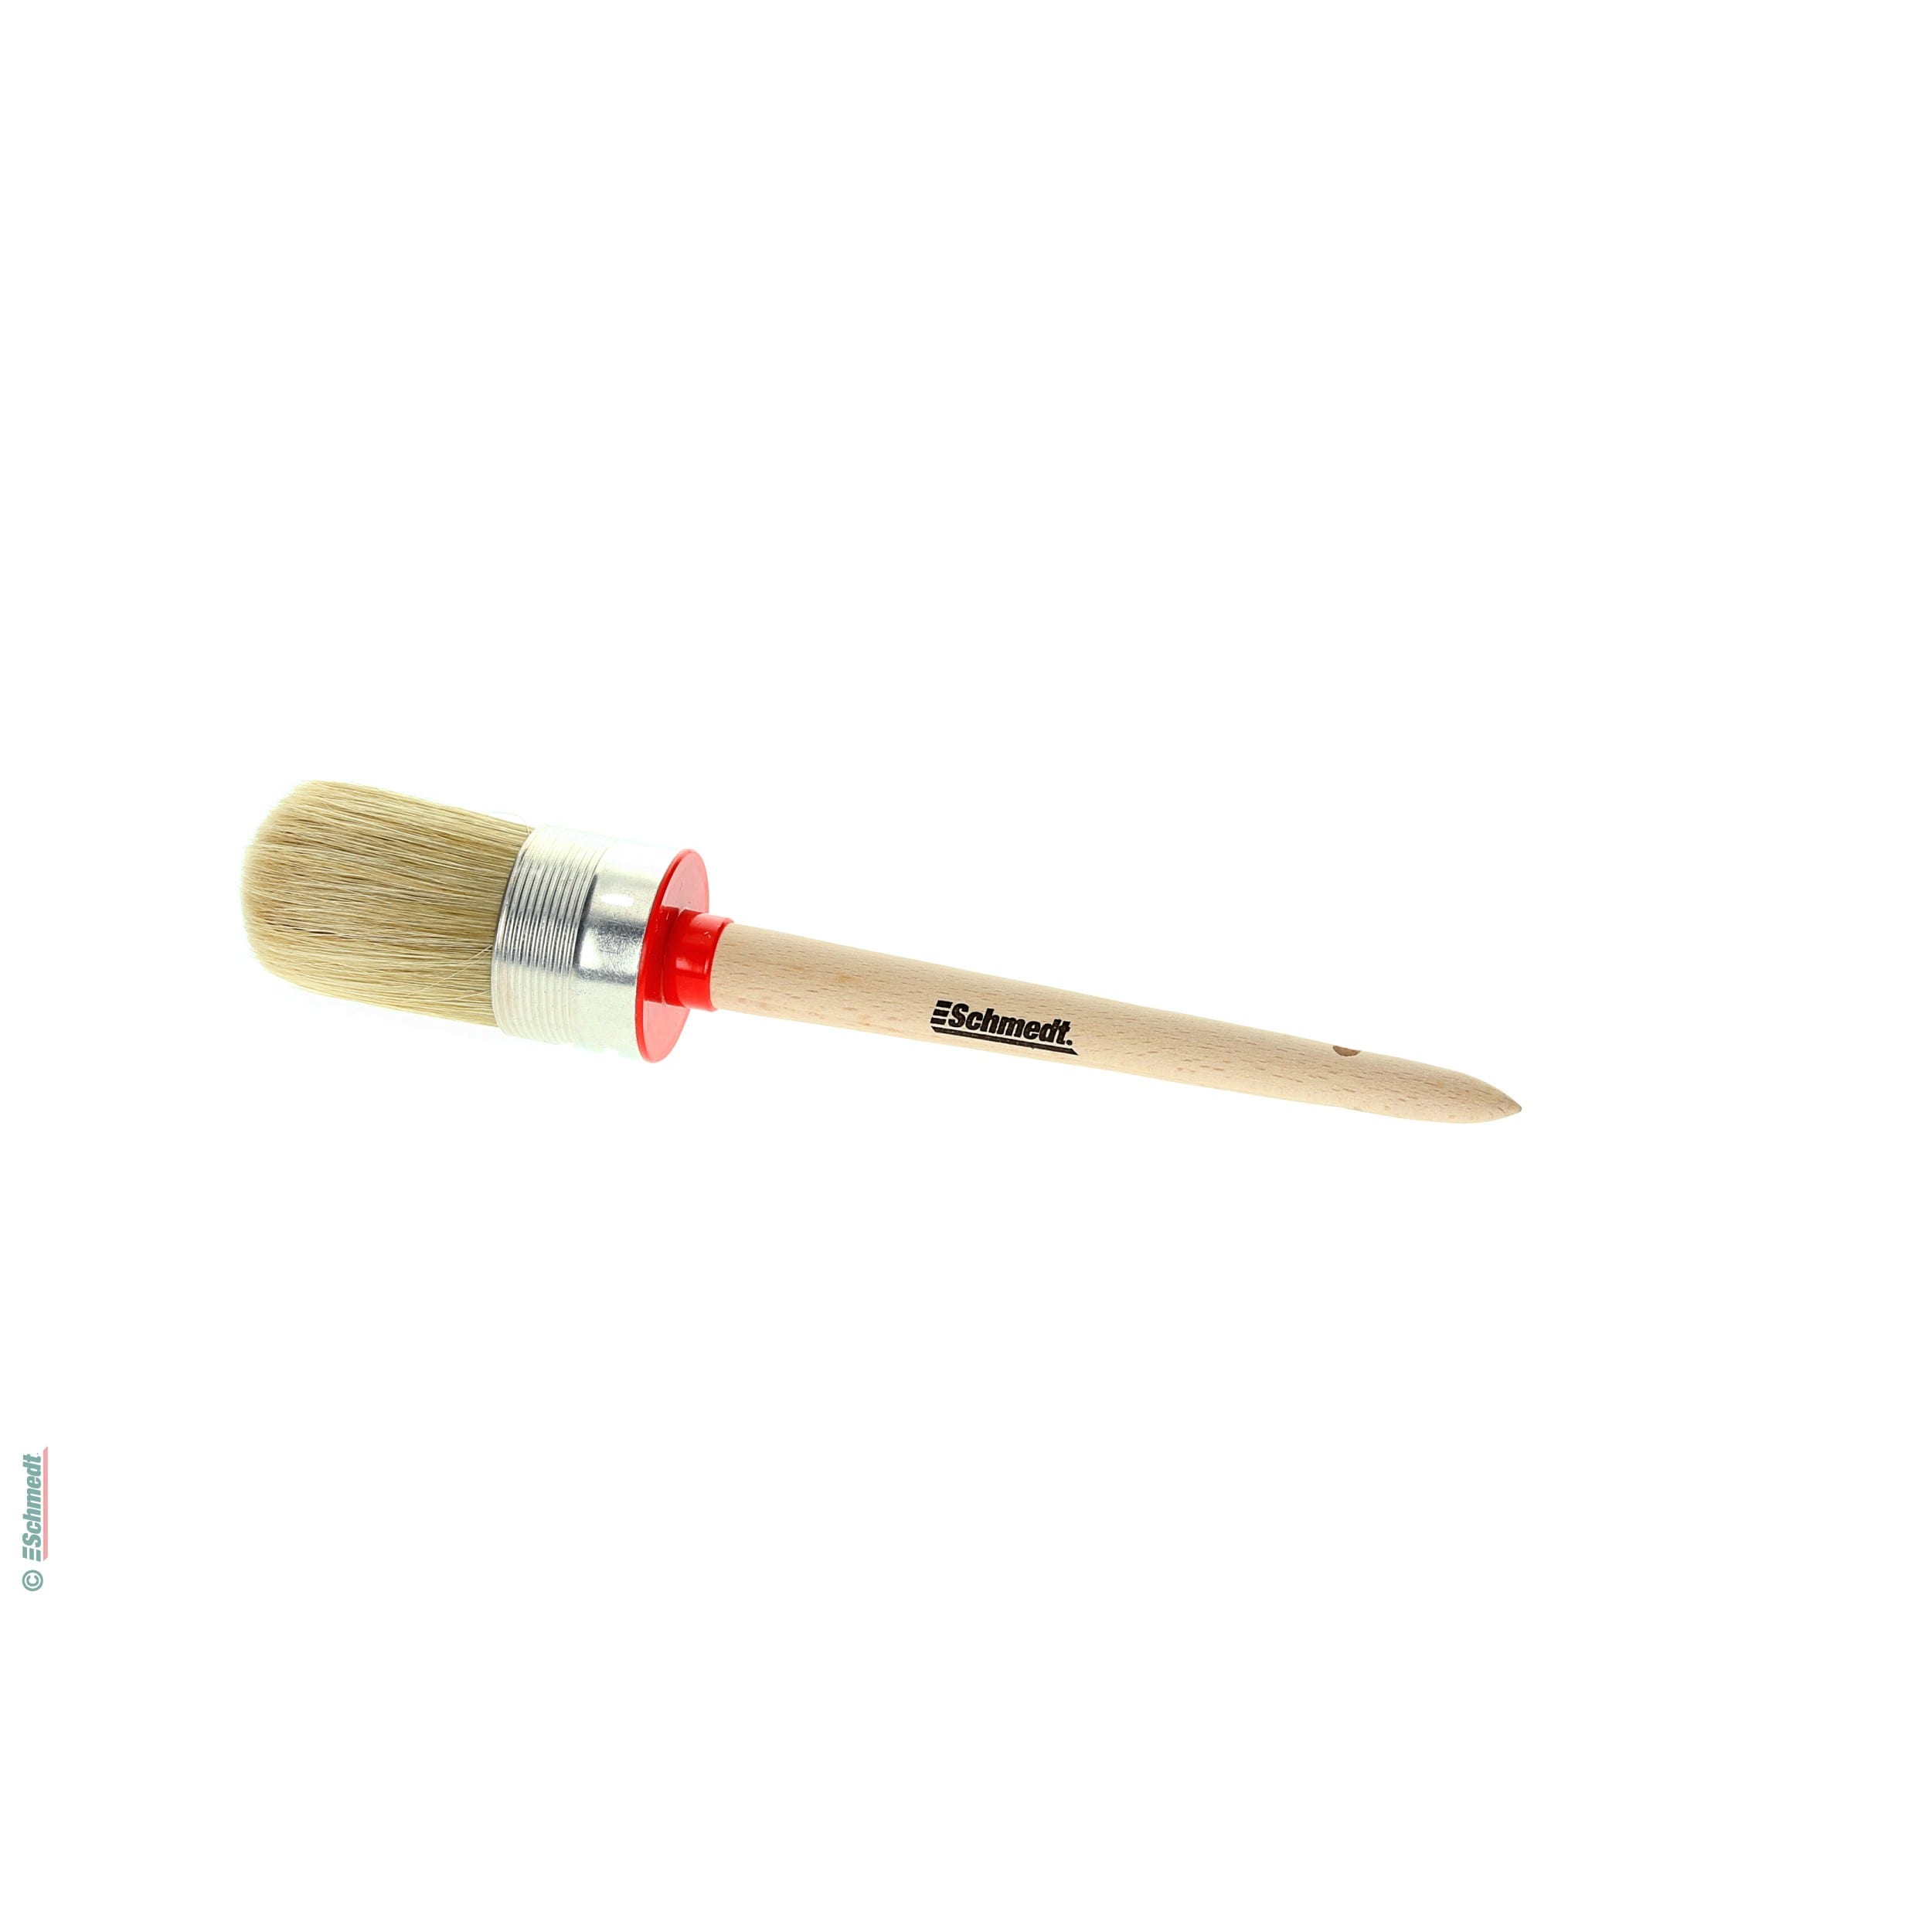 All-purpose brush, round, with aluminium ferrule - Size 12 - Diameter (in mm) 43 - versatile use...